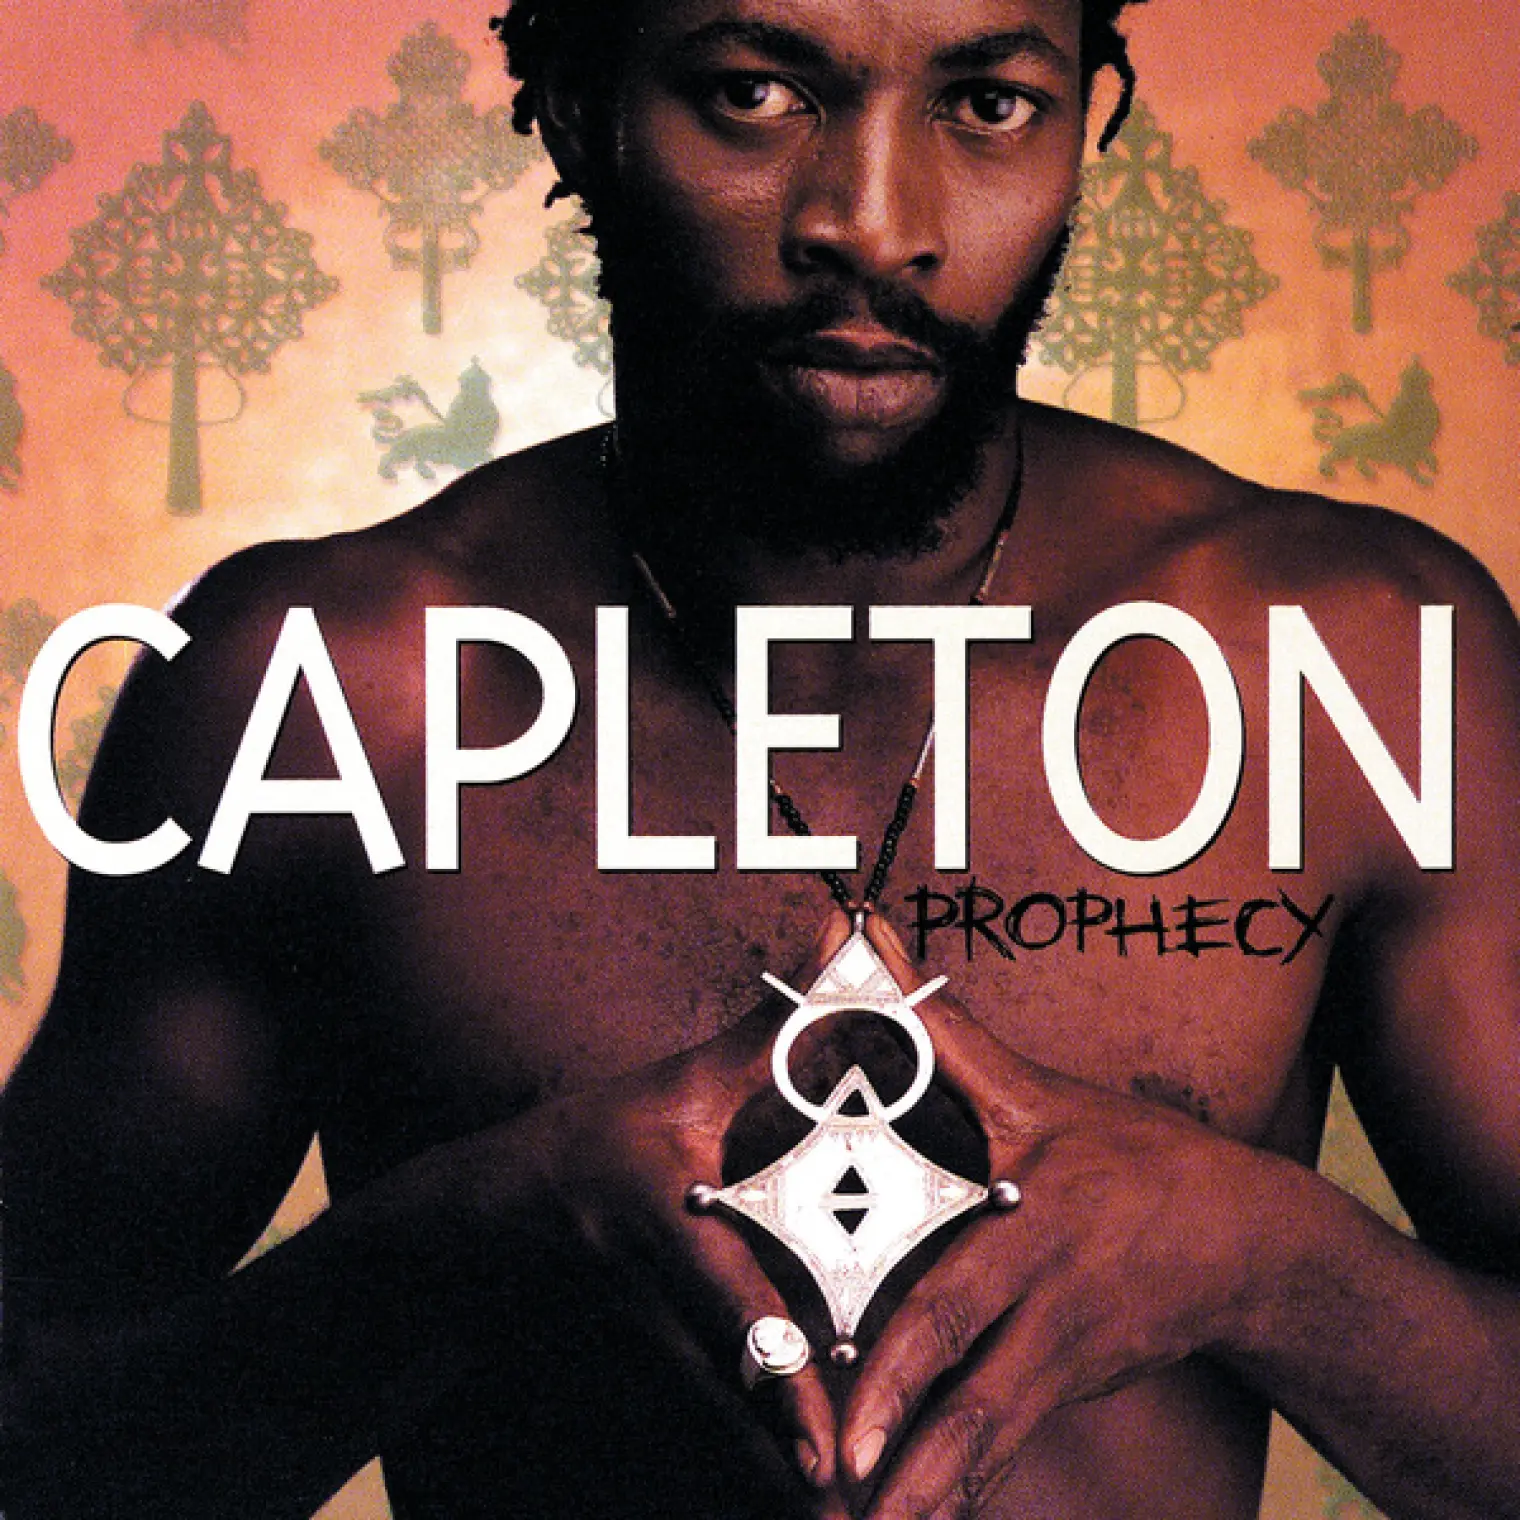 Prophecy -  Capleton 